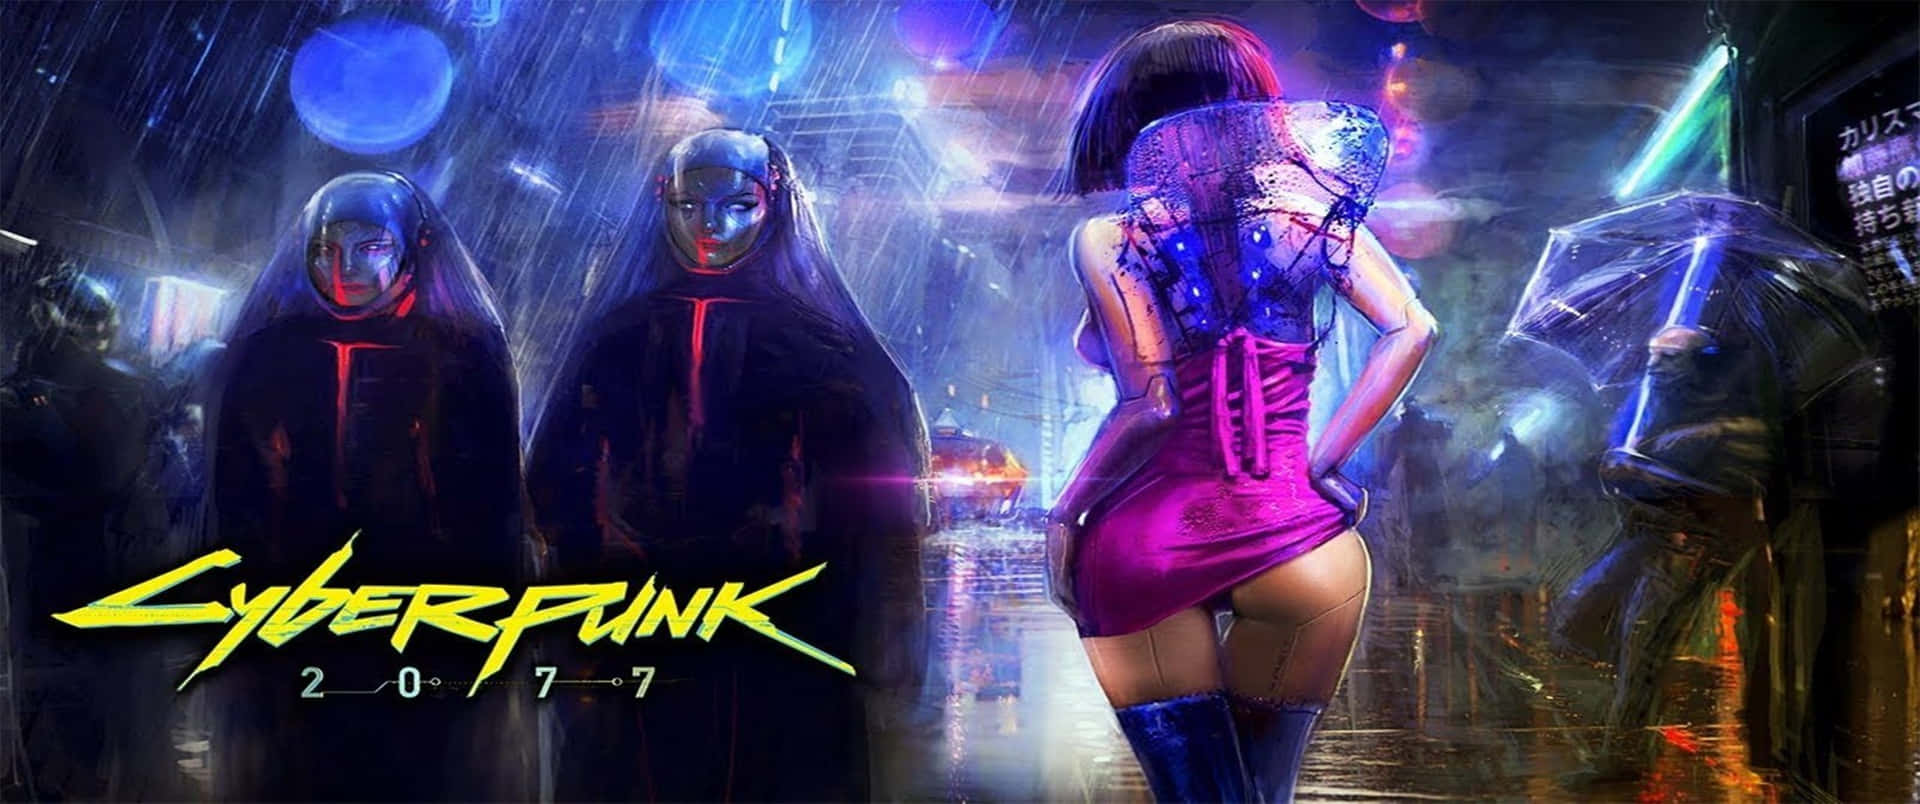 3440x1440p Cyberpunk 2077 Background Robotic Prostitute